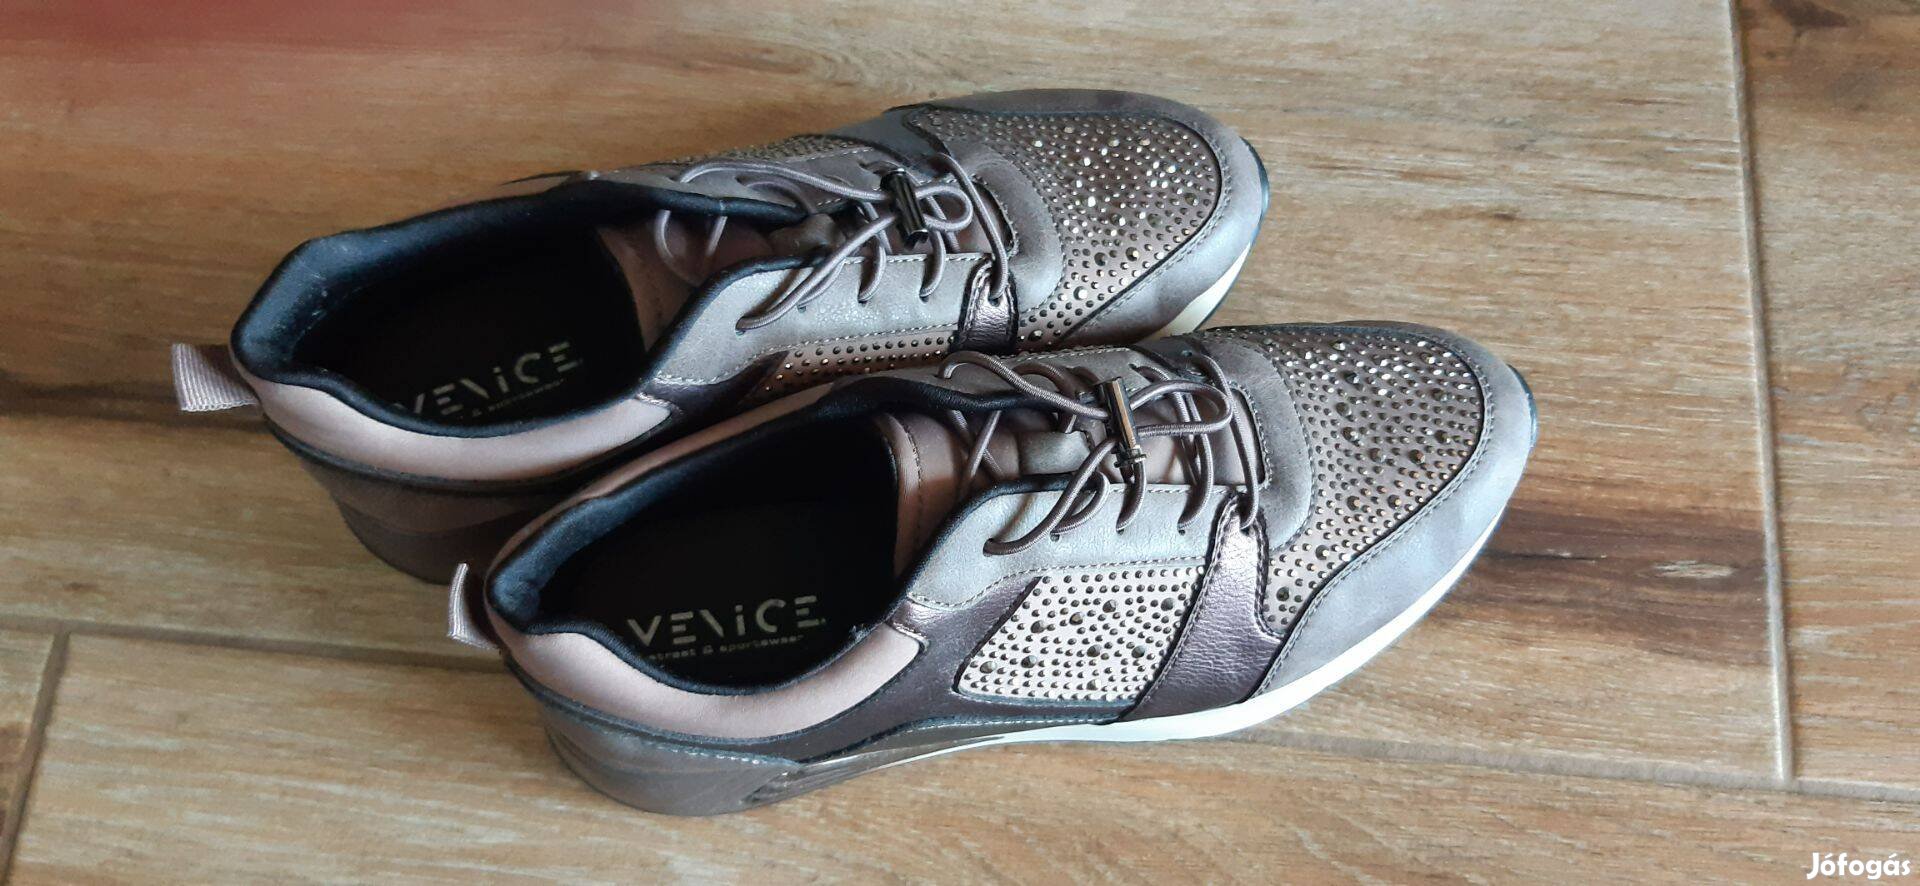 Venice márkájú női cipő 39-es, szinte új